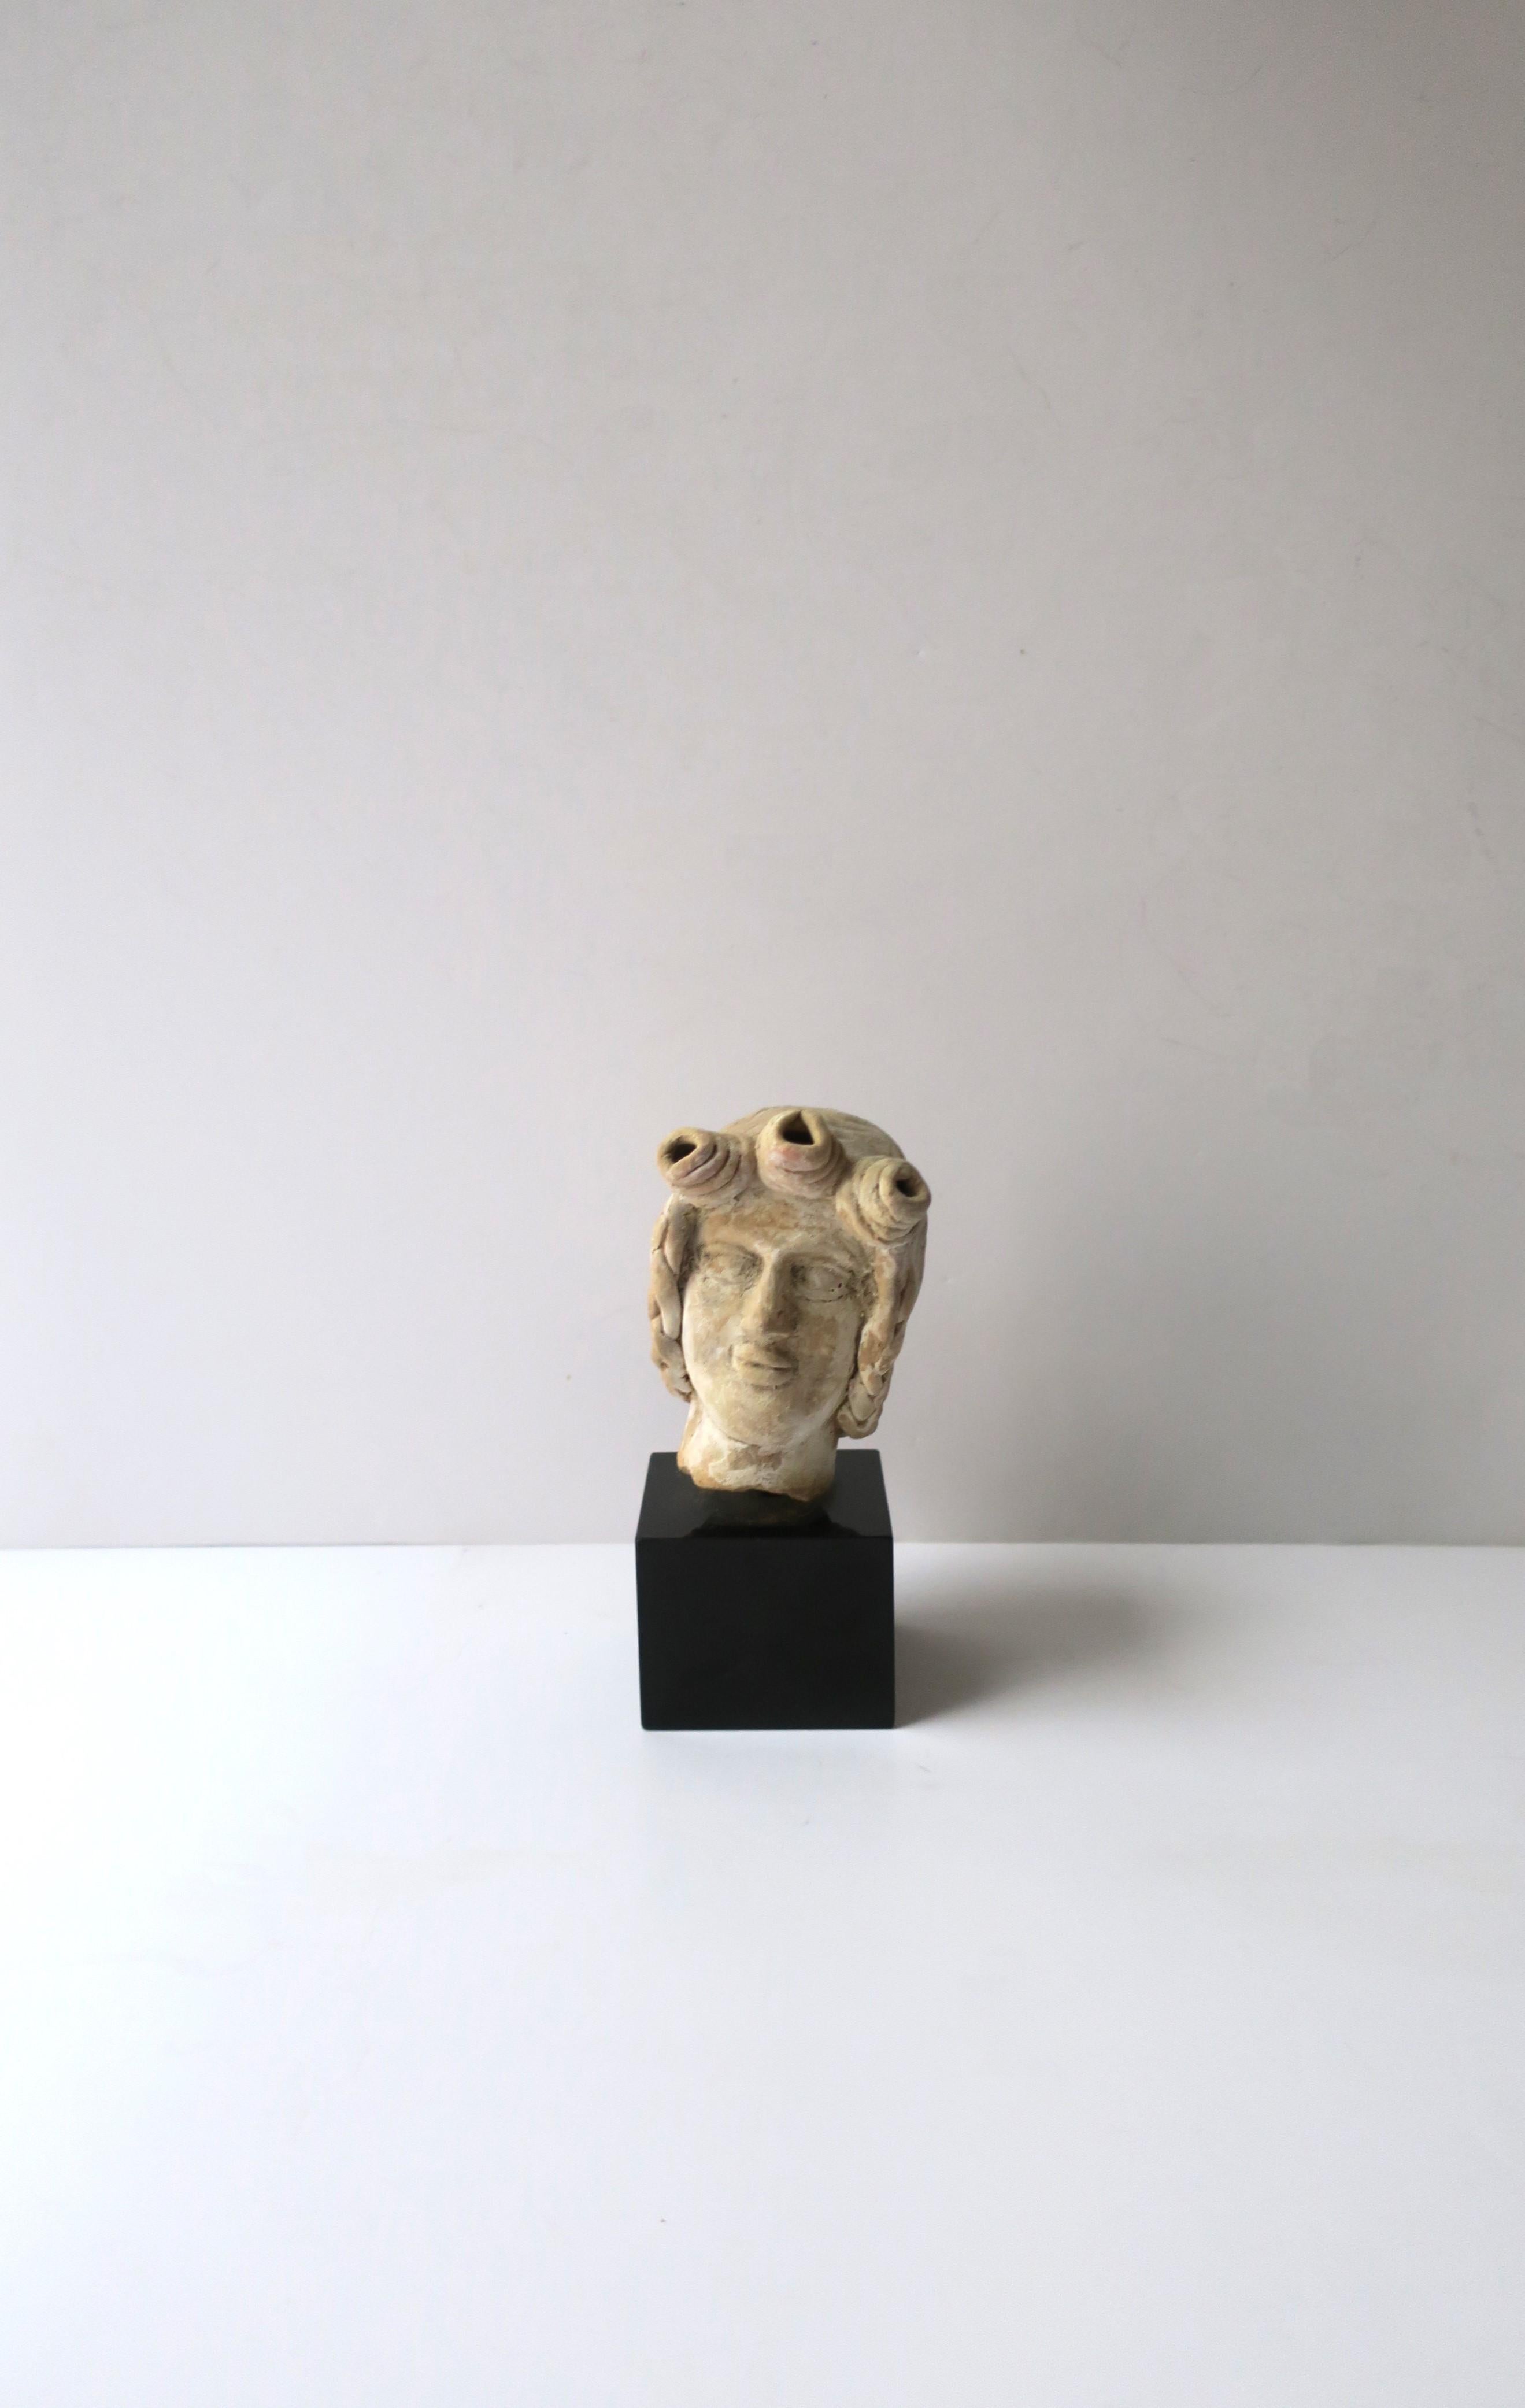 Handgefertigte Terrakotta-Kopfbüste auf einem Sockel aus schwarzem belgischem Marmor, Europa, Griechenland. Das genaue Datum ist nicht bekannt, es könnte sehr früh sein. Künstler/Bildhauer unbekannt. Diese schöne Skulptur kann gut auf einem